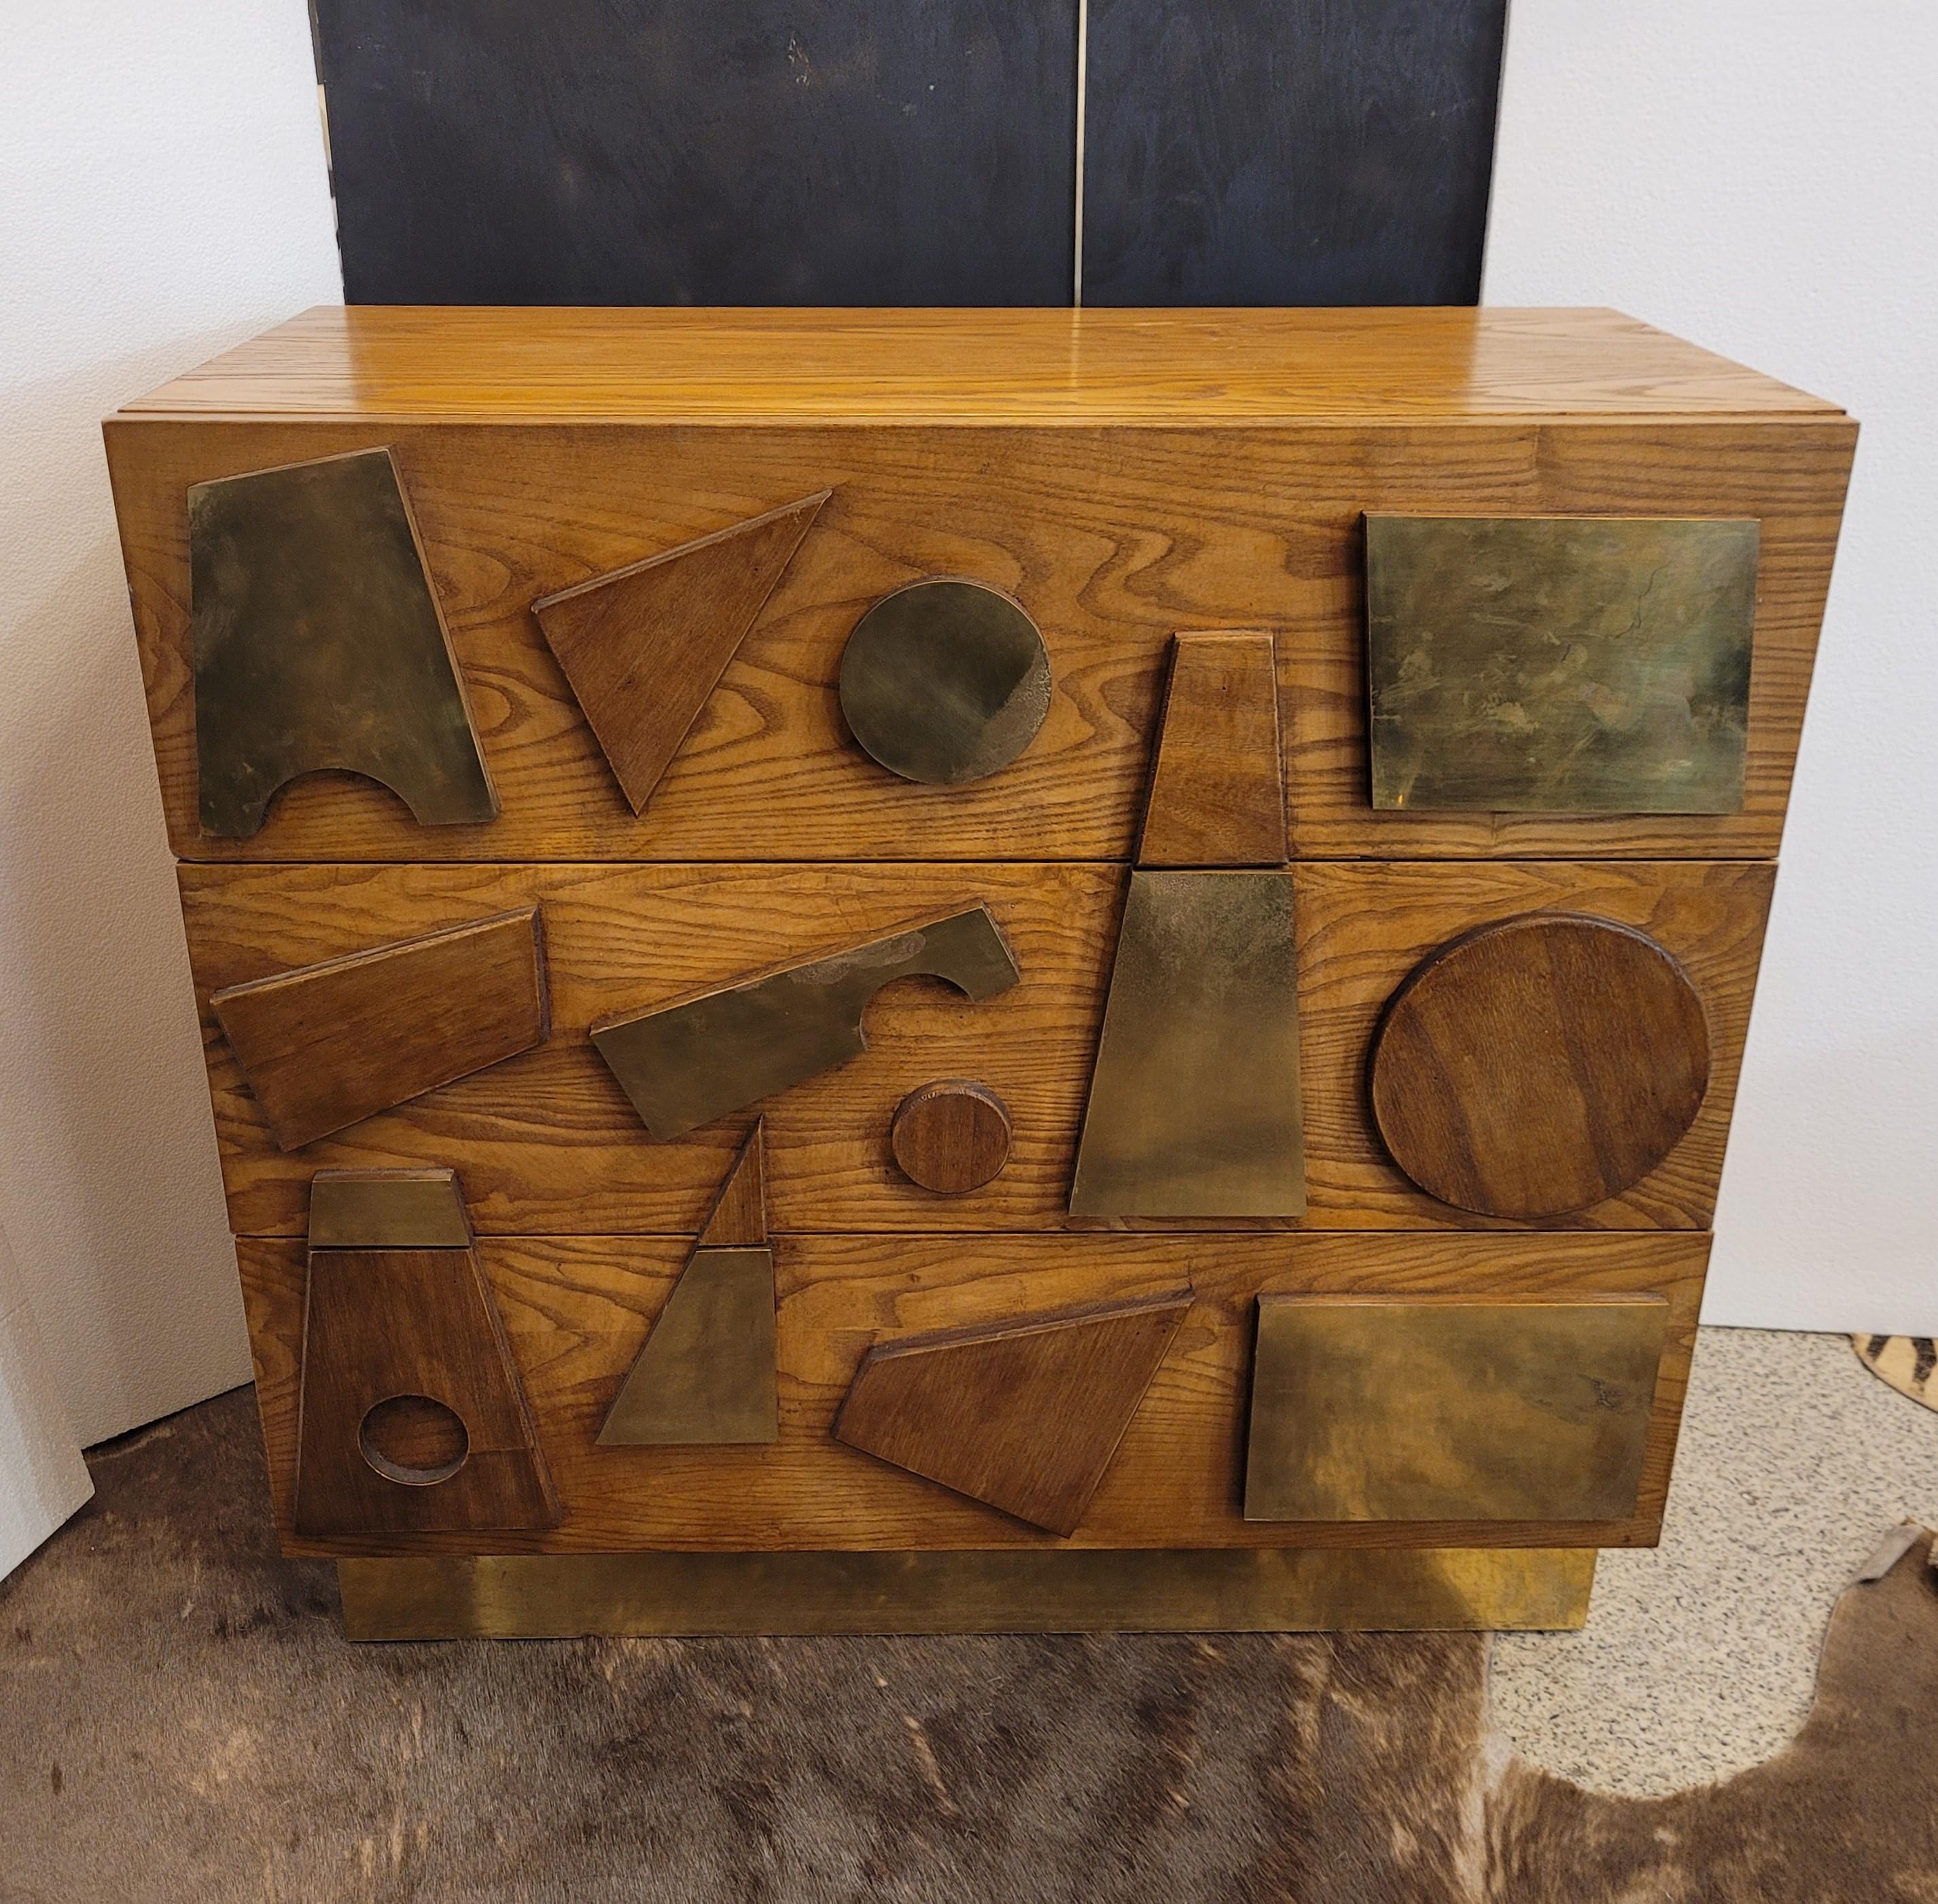 Bronze Gio Ponti Italian bronze wood Commode , Chest of drawers